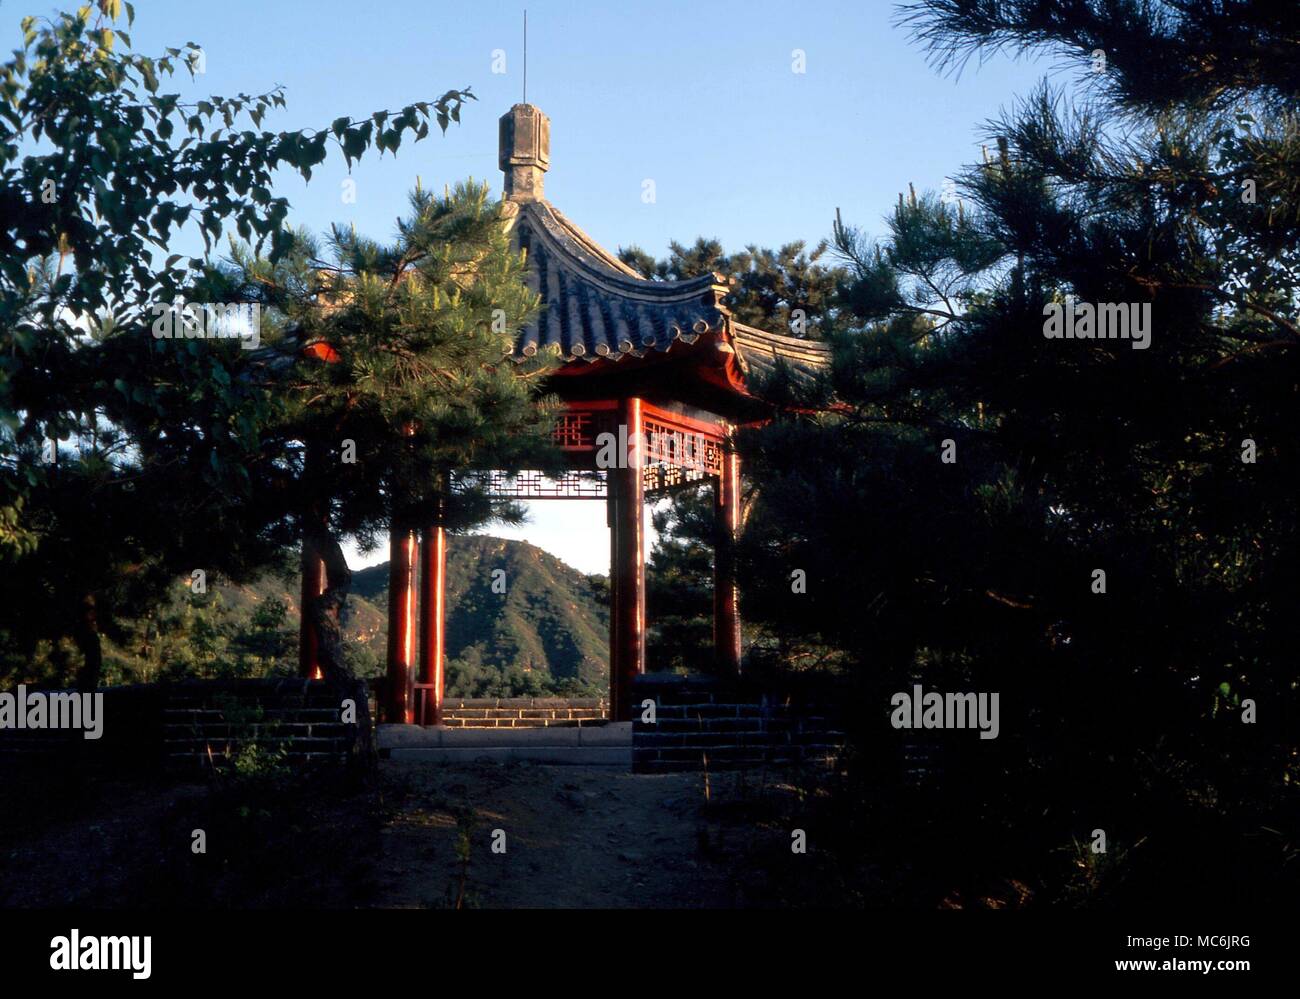 Il FENG SHUI - Padiglione Cinese sulla collina, il suo modulo completando il 'drago' forma della collina, come richiesto dalla perfetta Feng Shui. Il padiglione è situato nei pressi della Grande Muraglia, a nord di Pechino Foto Stock